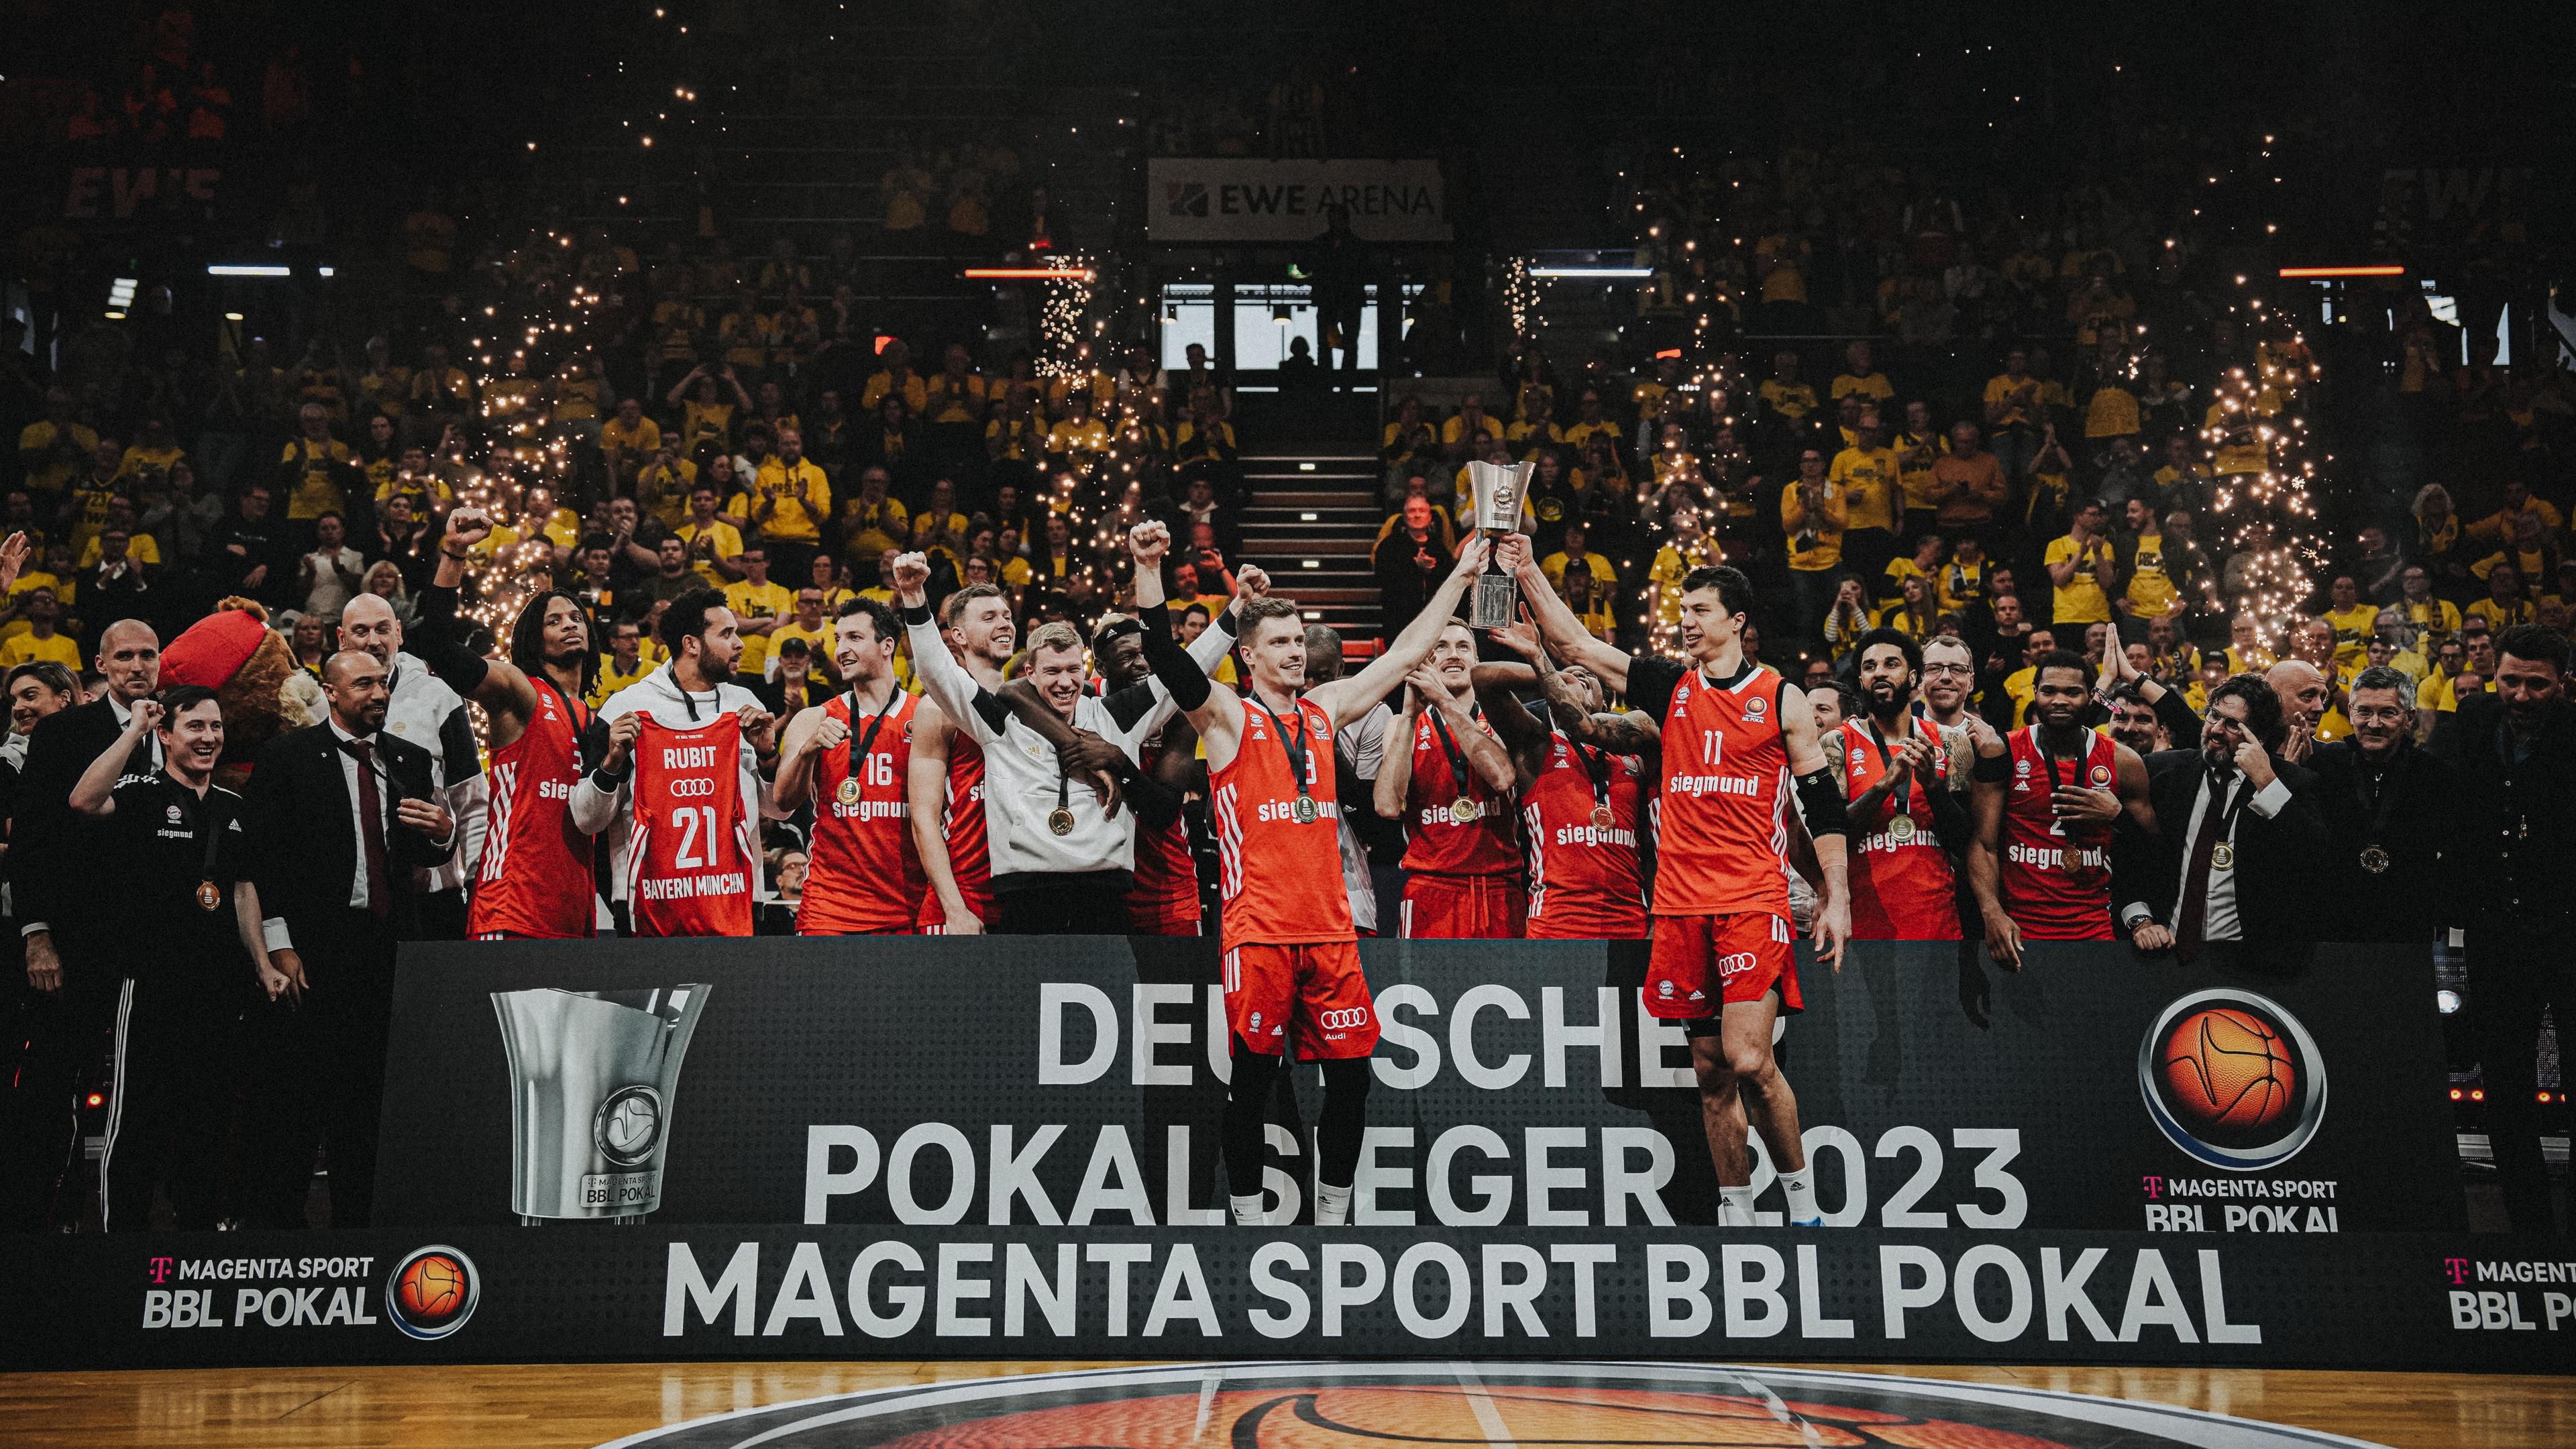 Der erste Titel der Saison geht nach München: Im Finale beim TOP FOUR um den MagentaSport BBL Pokal setzt sich der FC Bayern gegen die gastgebenden EWE Baskets Oldenburg mit 90:78 durch und feiert den vierten Pokalerfolg der Club-Geschichte. MVP beim TOP FOUR wird Nick Weiler-Babb.